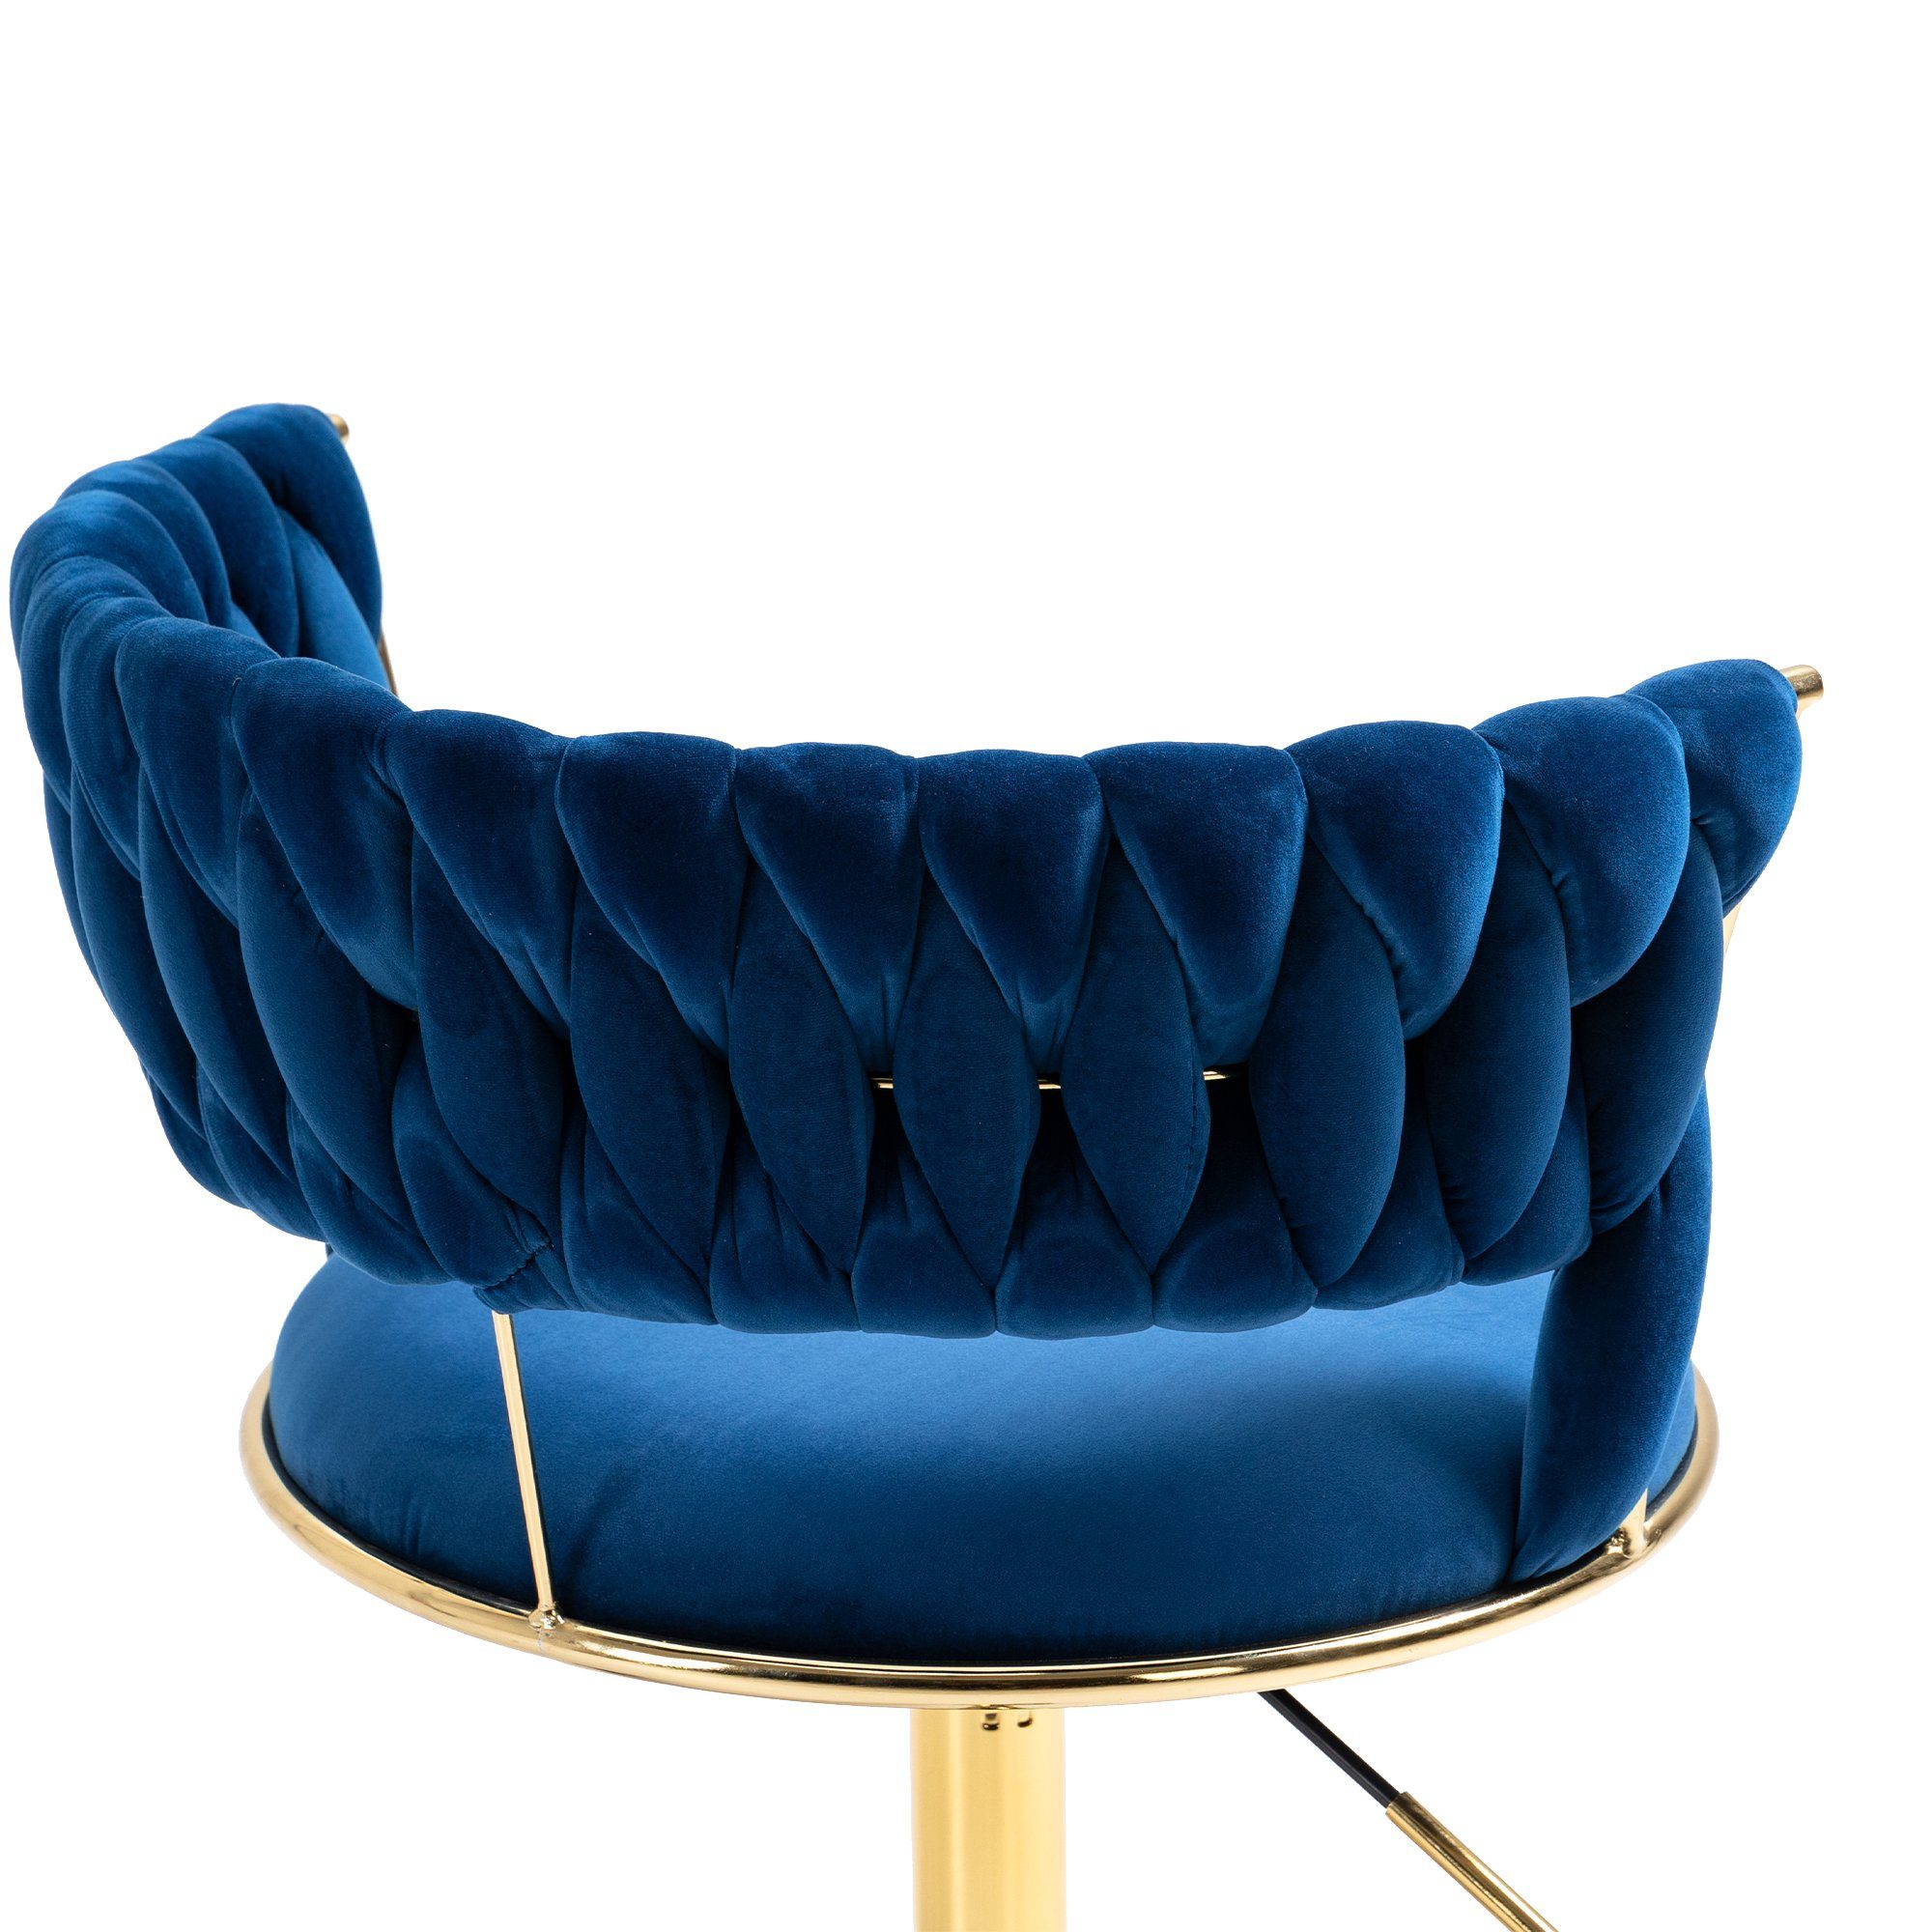 Blau mit 360 ° Beinen, Rollenstuhl goldfarbigen höhenverstellbar Ulife Drehstuhl